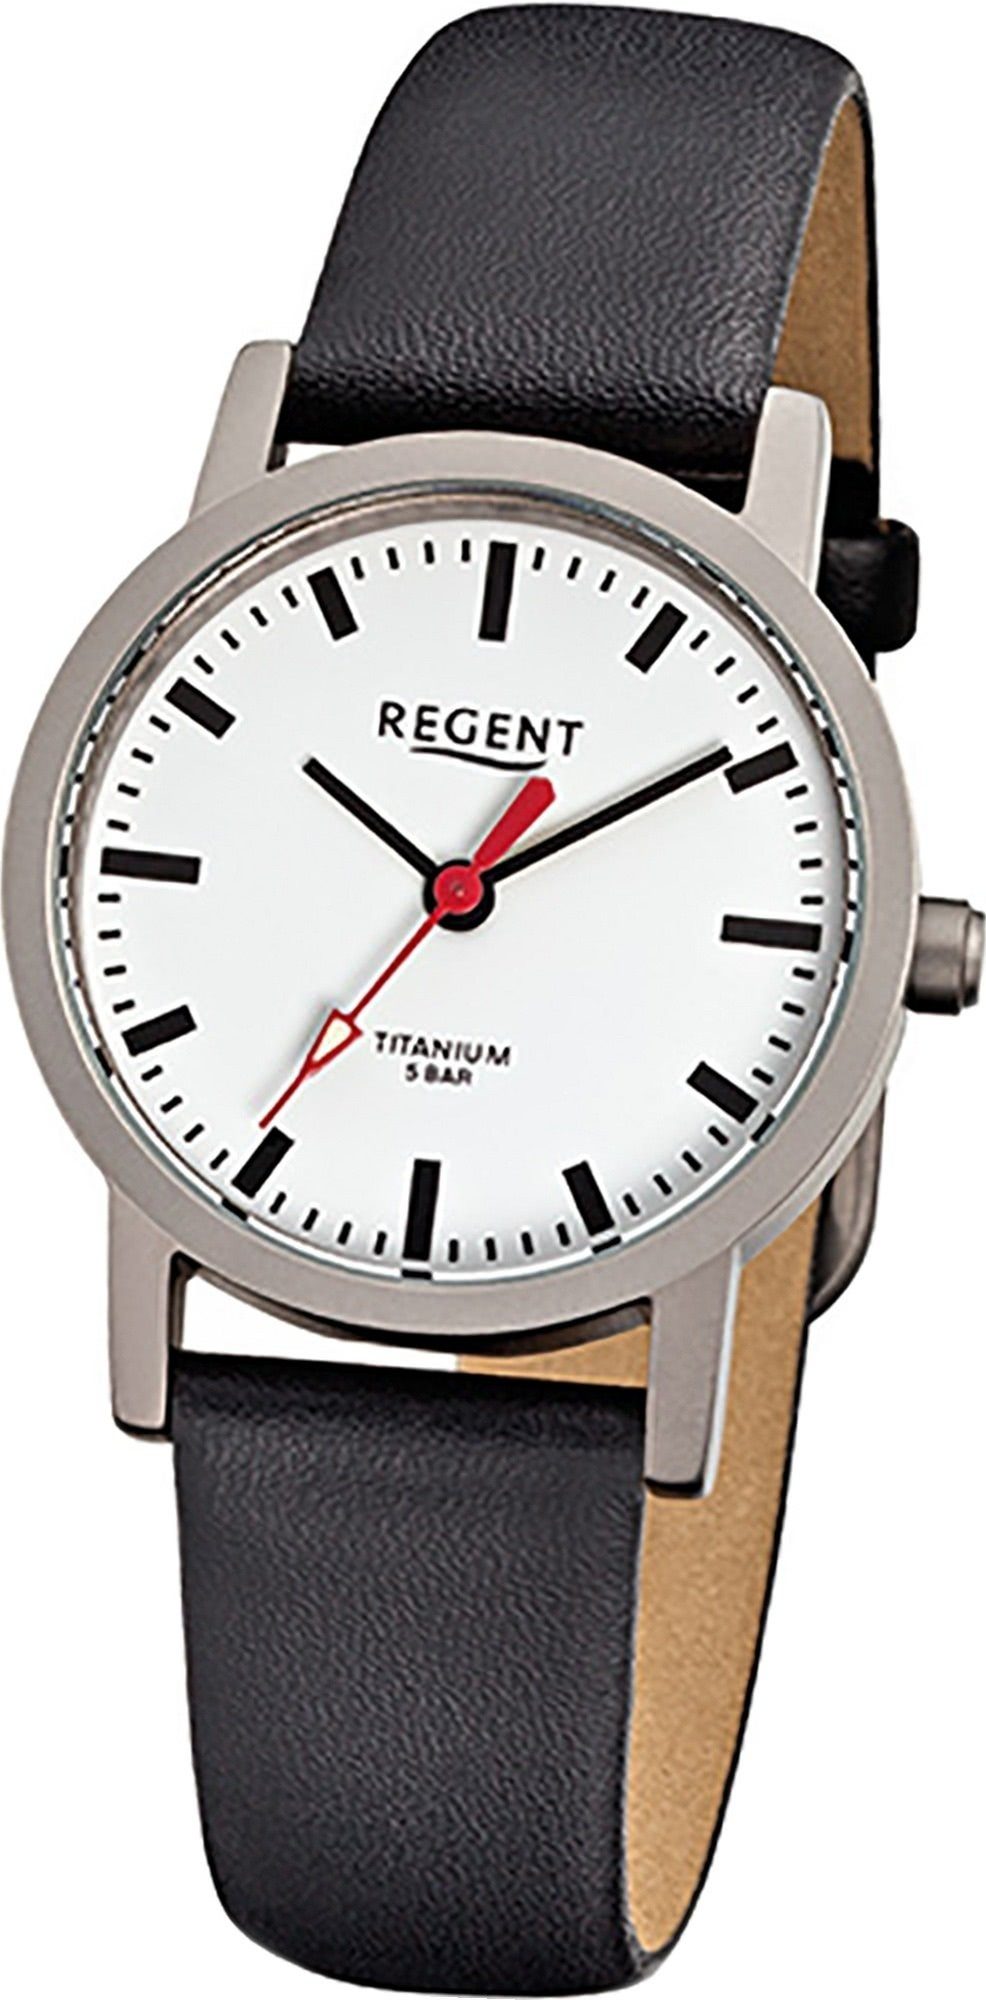 Regent Quarzuhr Regent Leder Damen Uhr F-240 Quarzuhr, Damenuhr Lederarmband schwarz, rundes Gehäuse, klein (ca. 27mm)